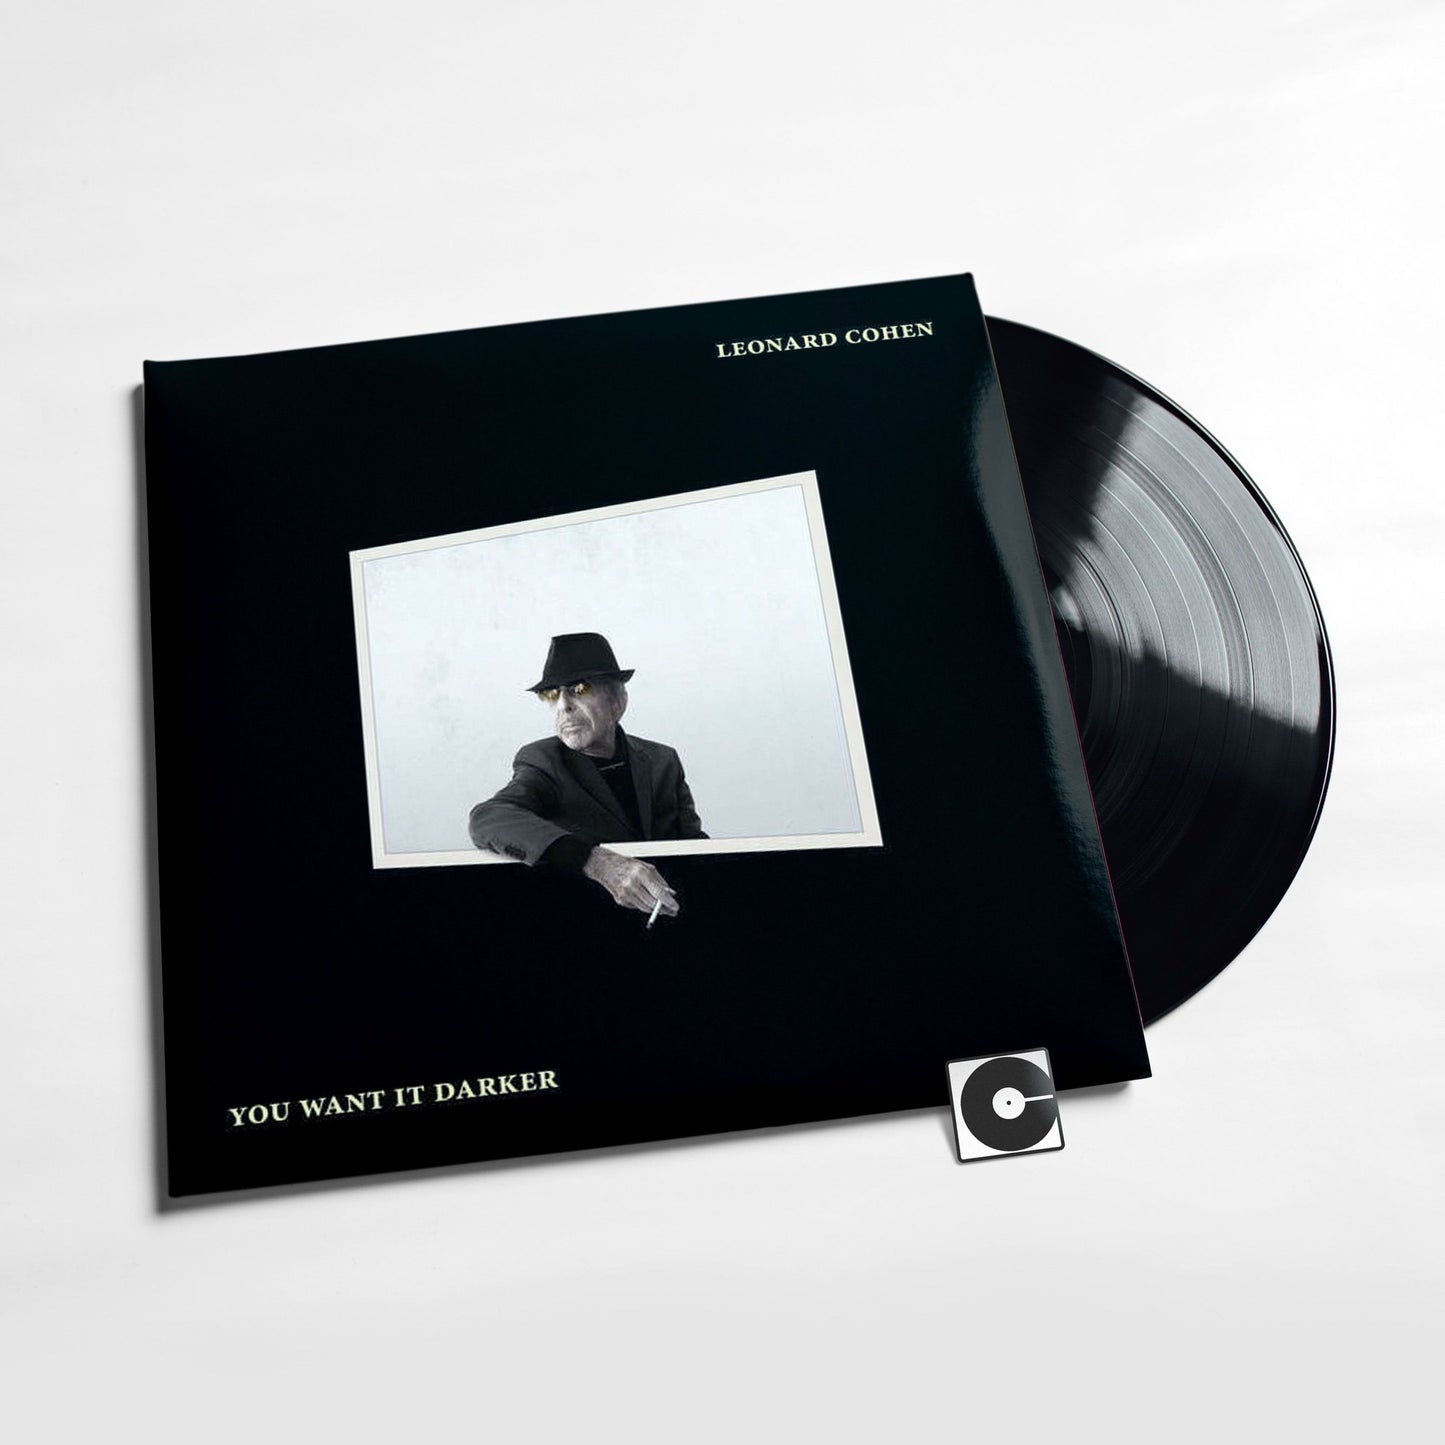 Leonard Cohen - "You Want It Darker"